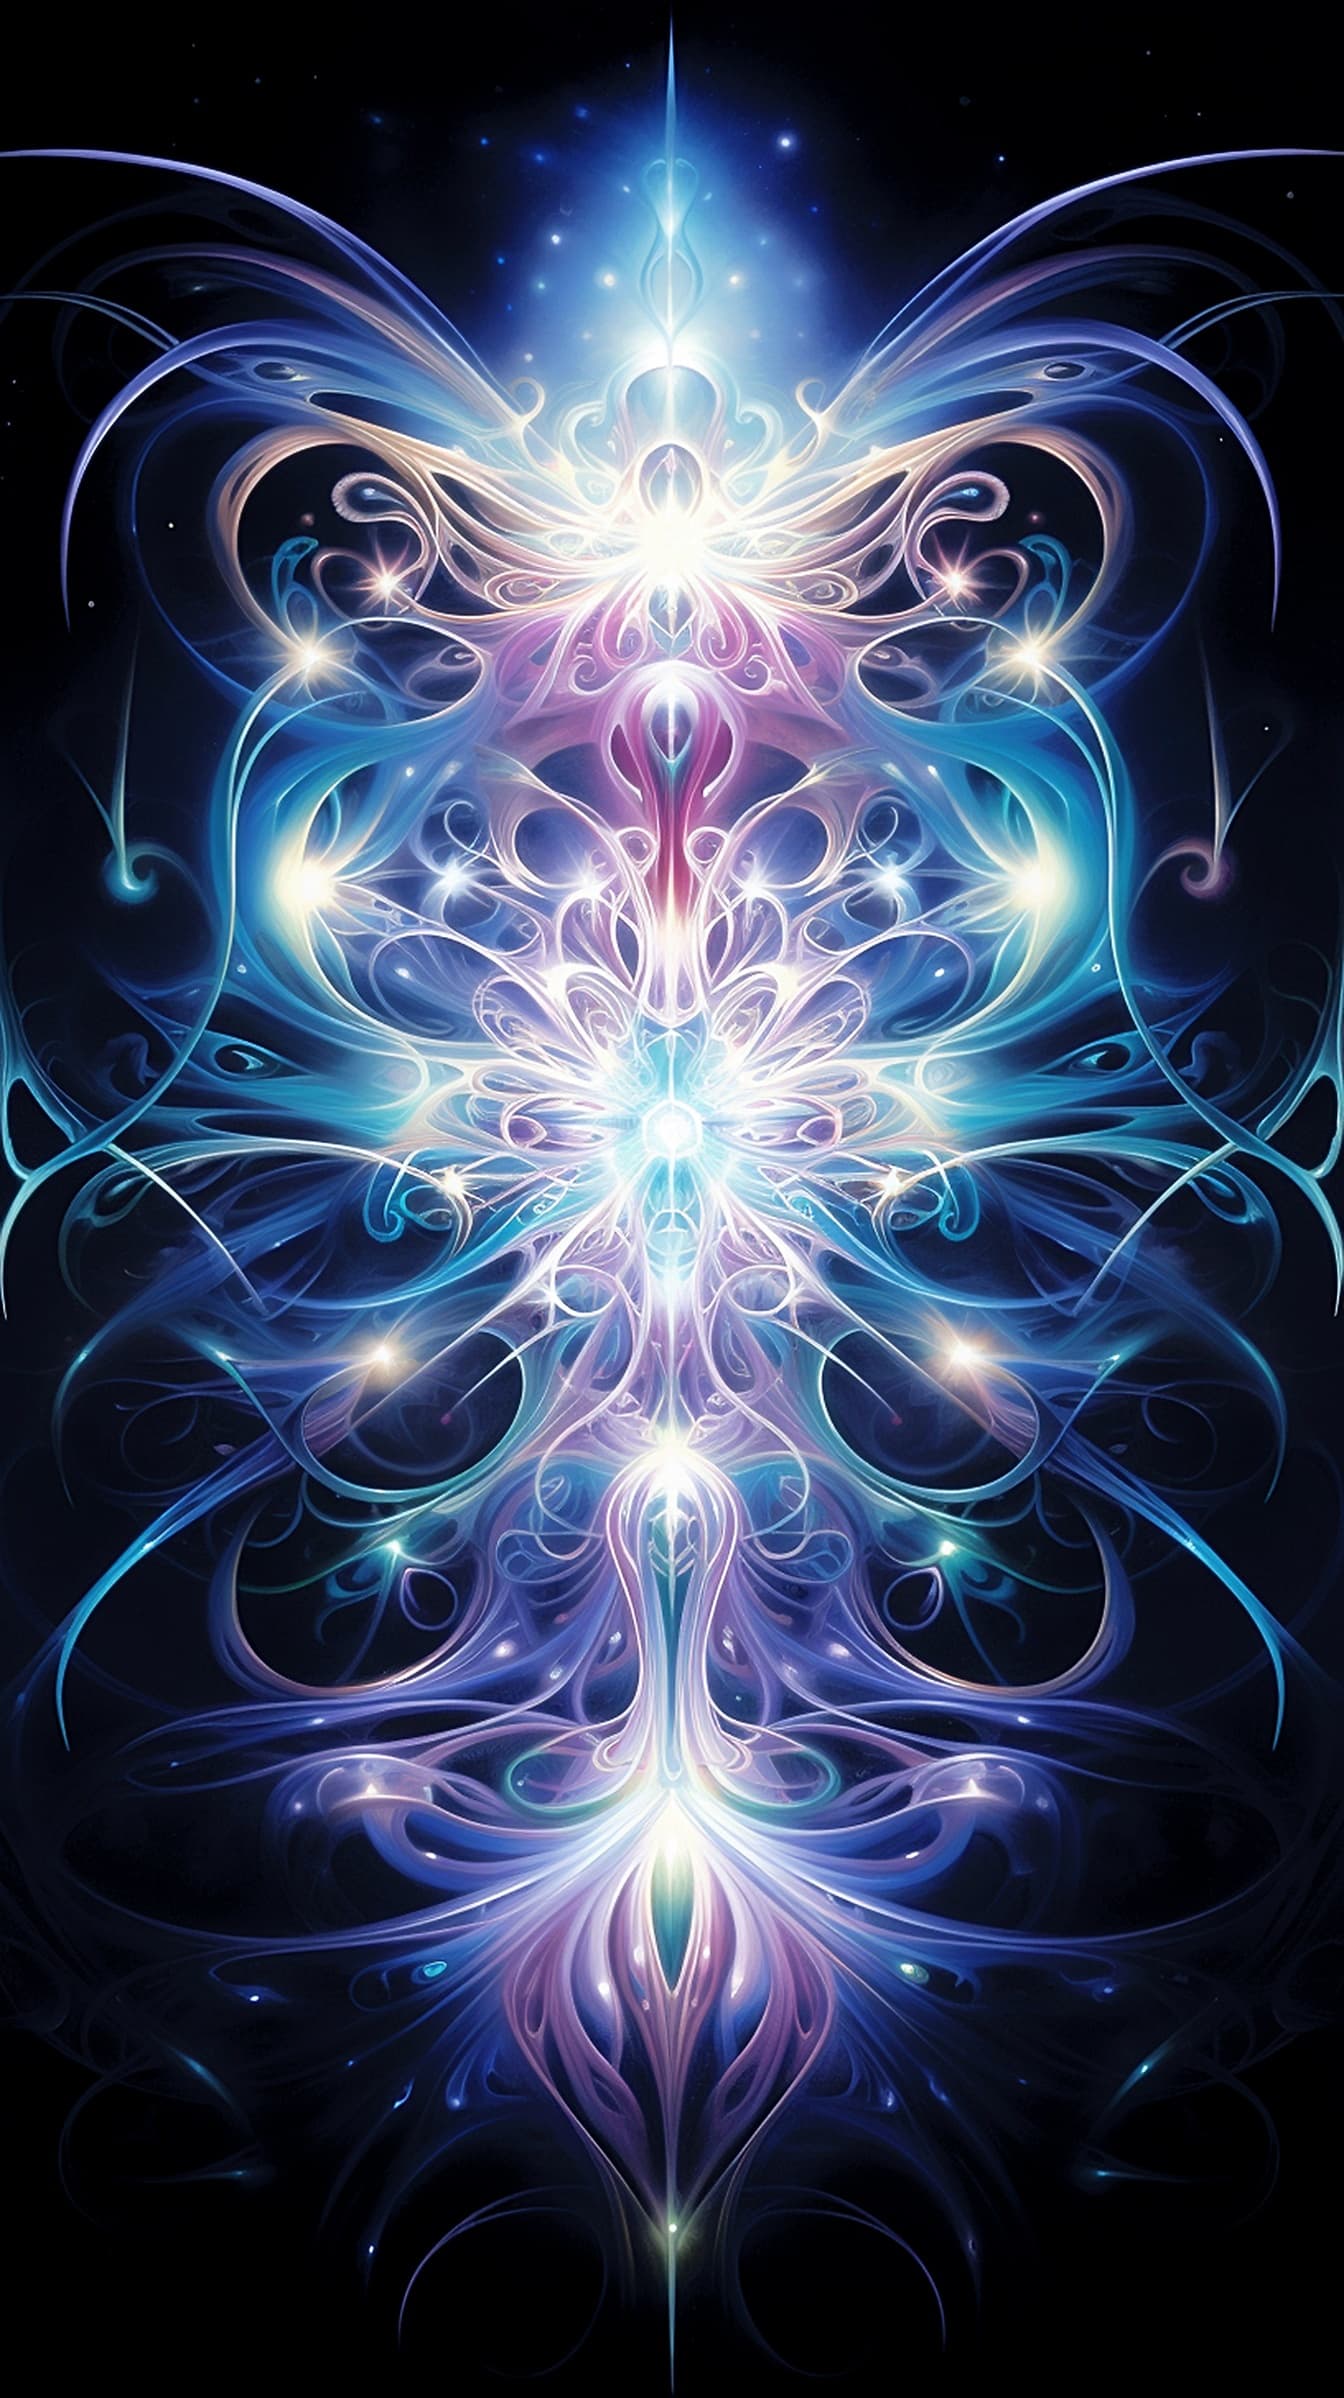 Kolorowa grafika fantasy przedstawiająca symetrię pionową i poziomą